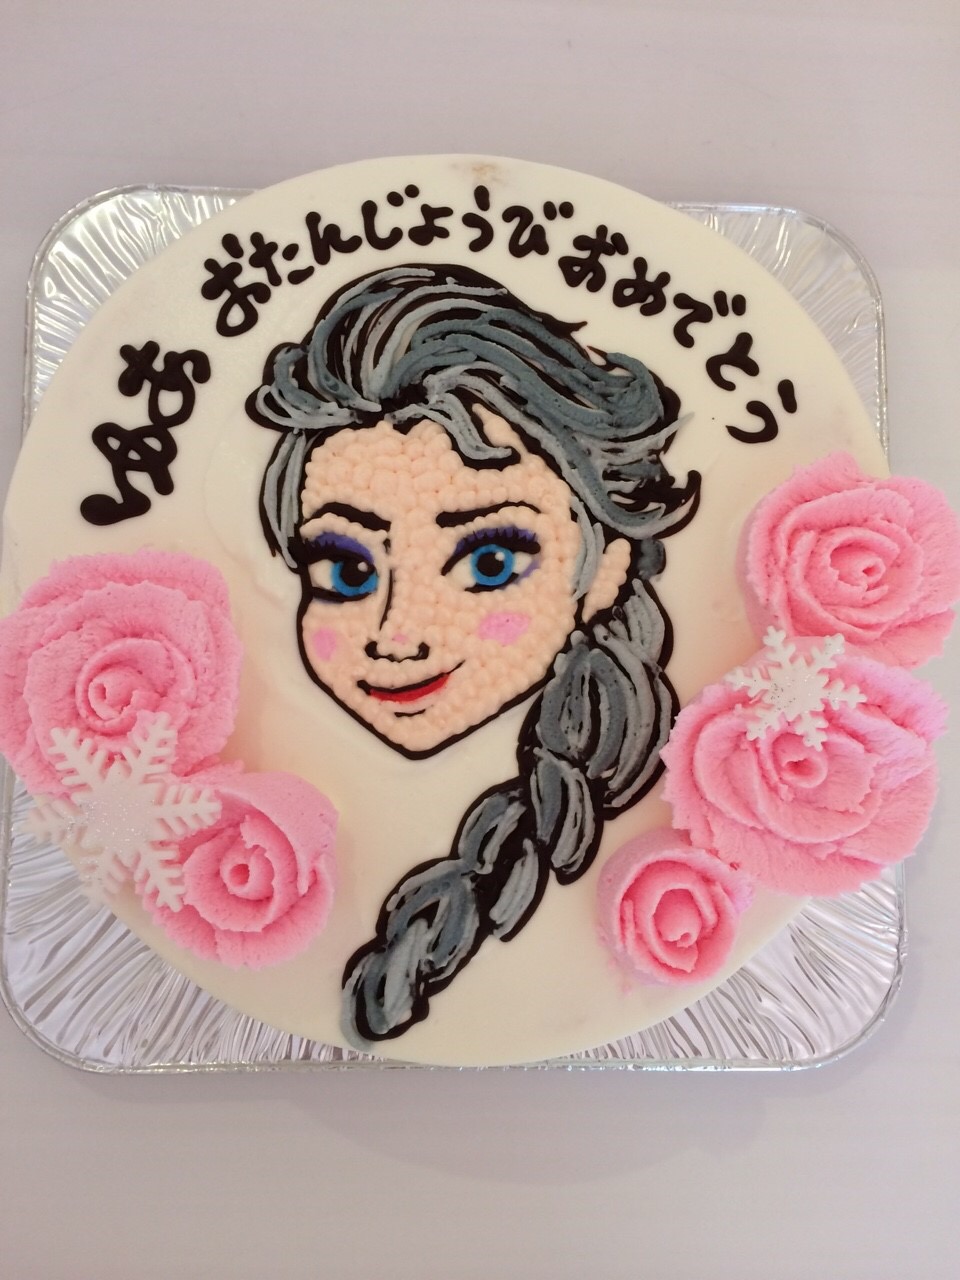 名古屋のキャラクターイラスト入りバースデーケーキ